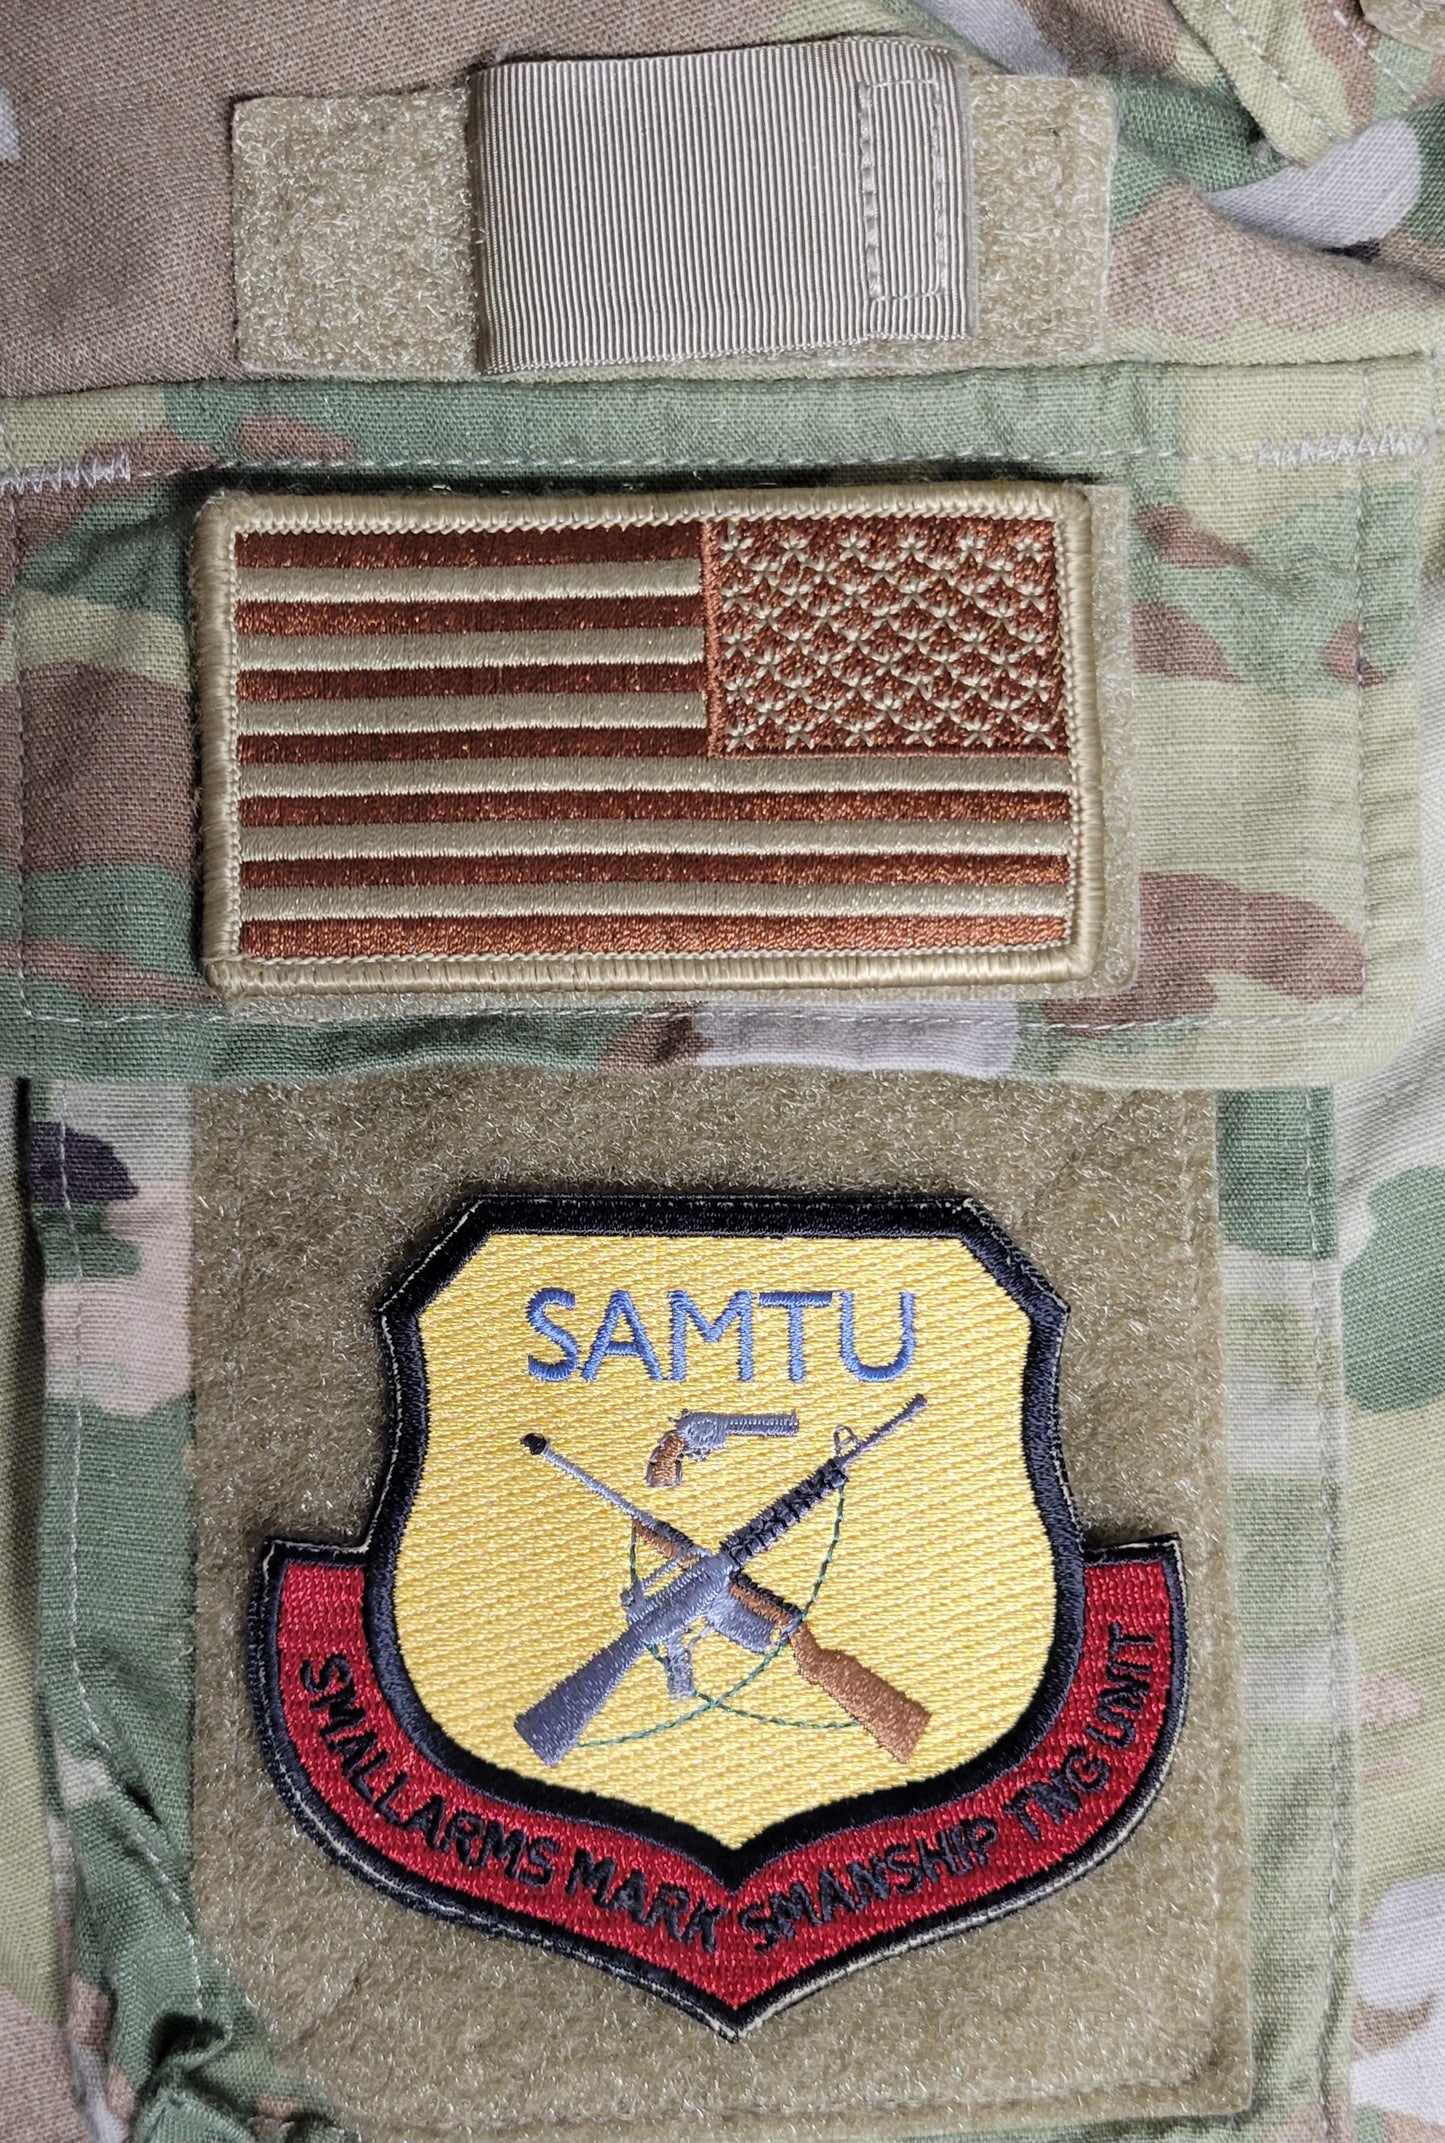 Small Arms Marksmanship Training Unit (SAMTU) Patch - Combat Arms Precursor